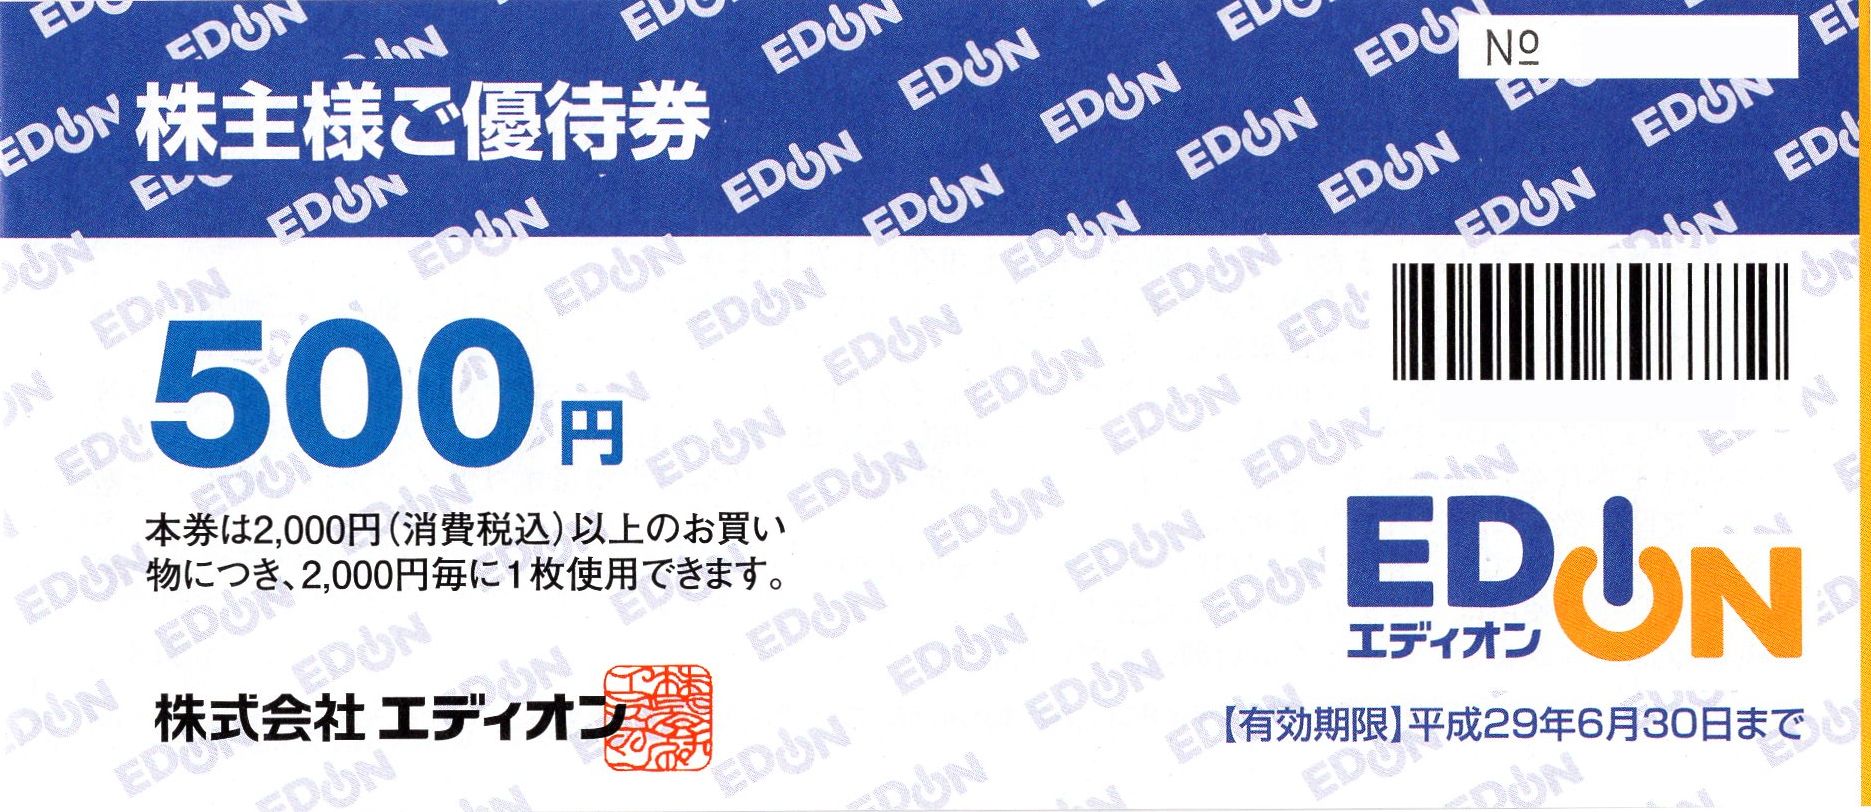 エディオン(EDION) 株主優待券 500円券 – チケット百科事典